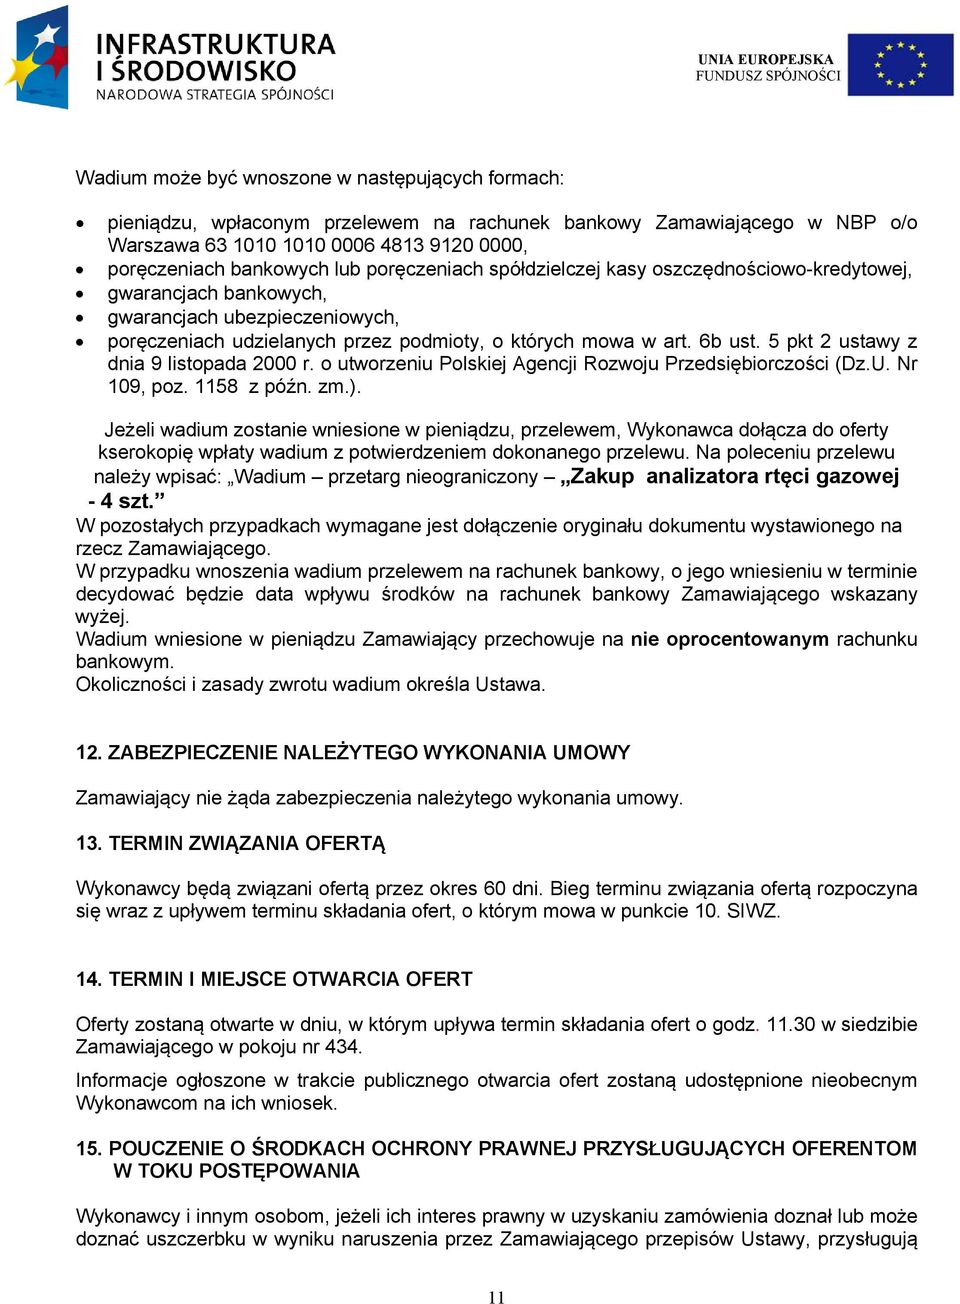 5 pkt 2 ustawy z dnia 9 listopada 2000 r. o utworzeniu Polskiej Agencji Rozwoju Przedsiębiorczości (Dz.U. Nr 109, poz. 1158 z późn. zm.).